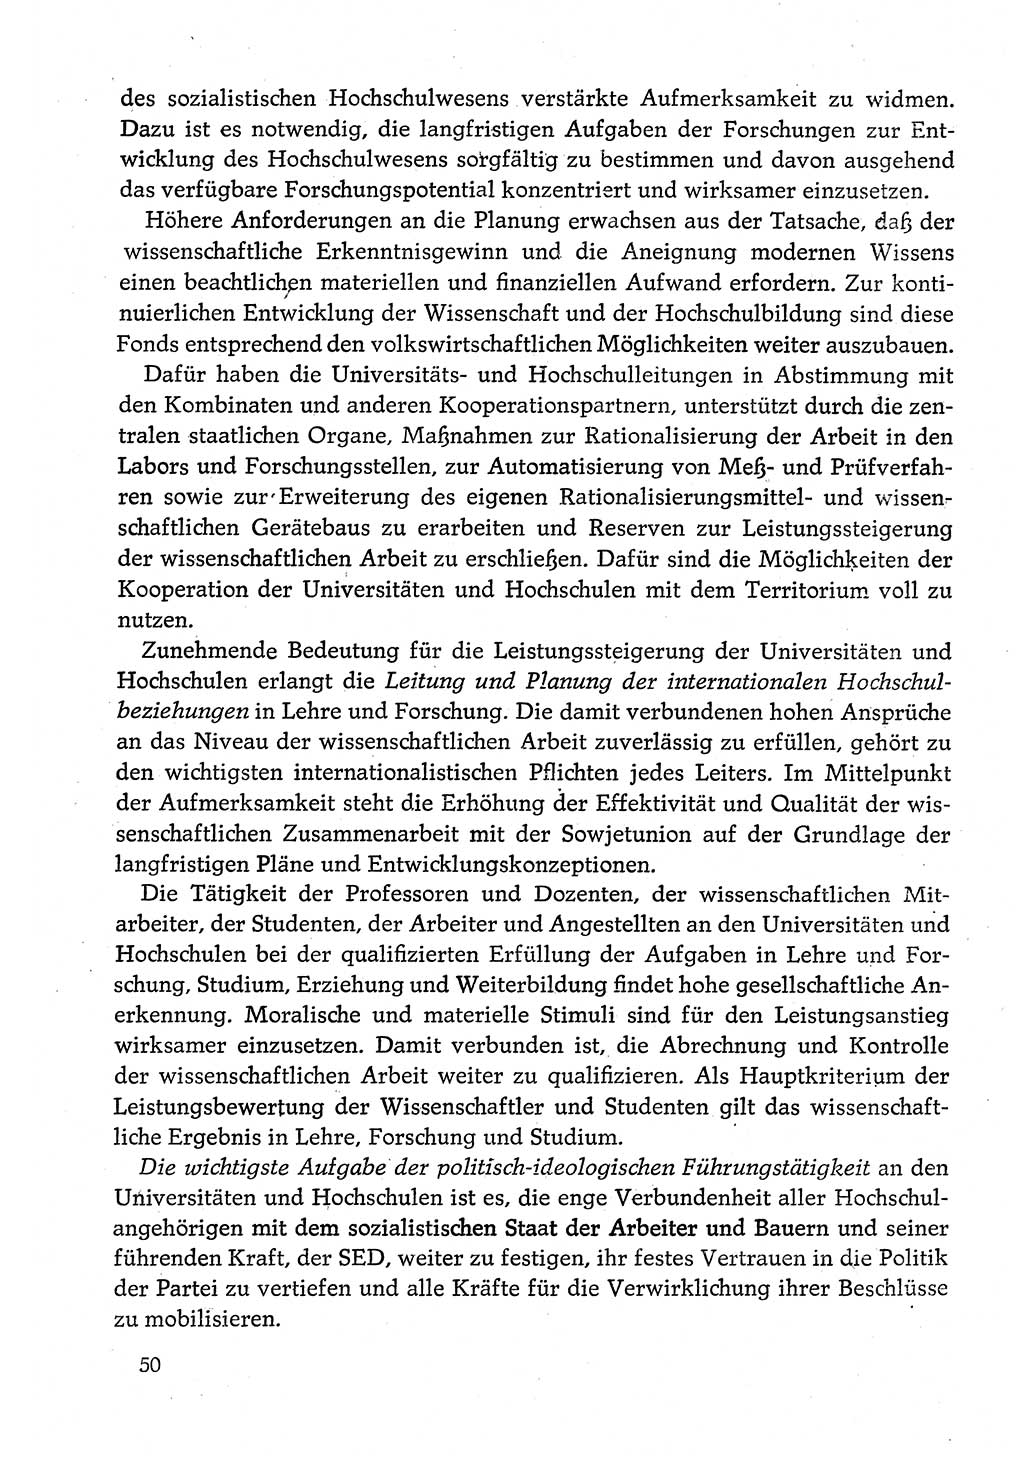 Dokumente der Sozialistischen Einheitspartei Deutschlands (SED) [Deutsche Demokratische Republik (DDR)] 1980-1981, Seite 50 (Dok. SED DDR 1980-1981, S. 50)